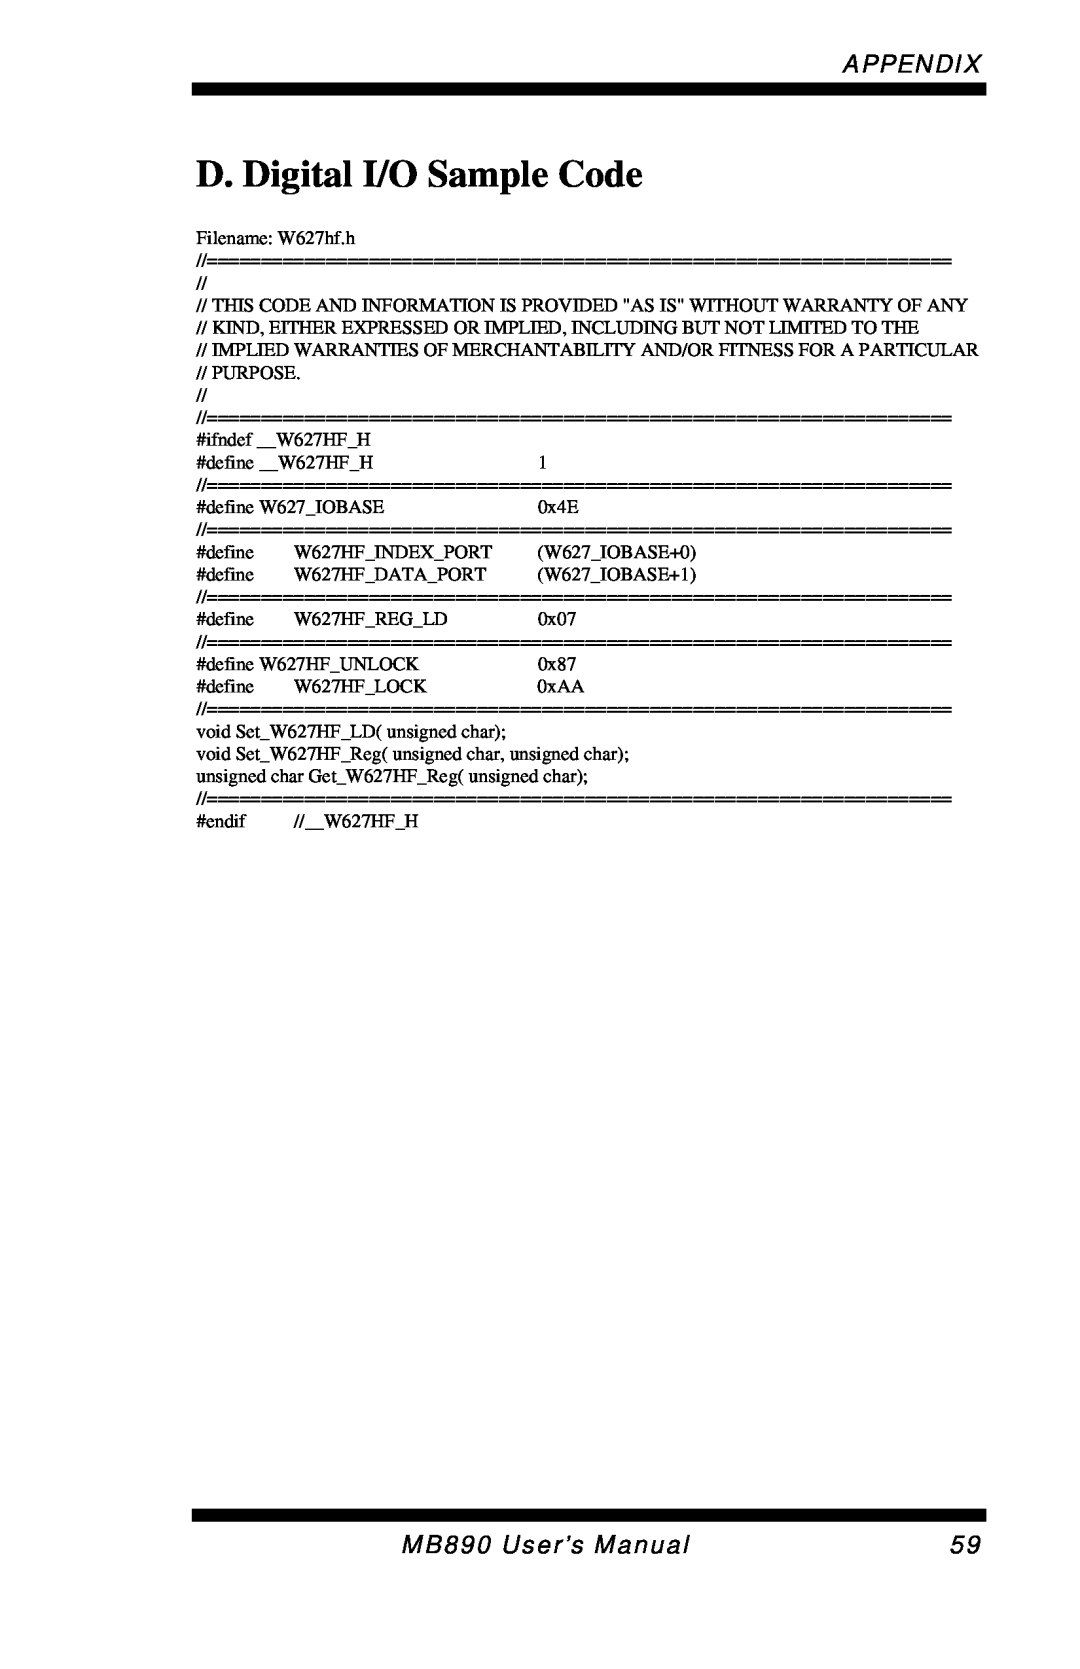 Intel MB890 user manual D. Digital I/O Sample Code, Appendix 